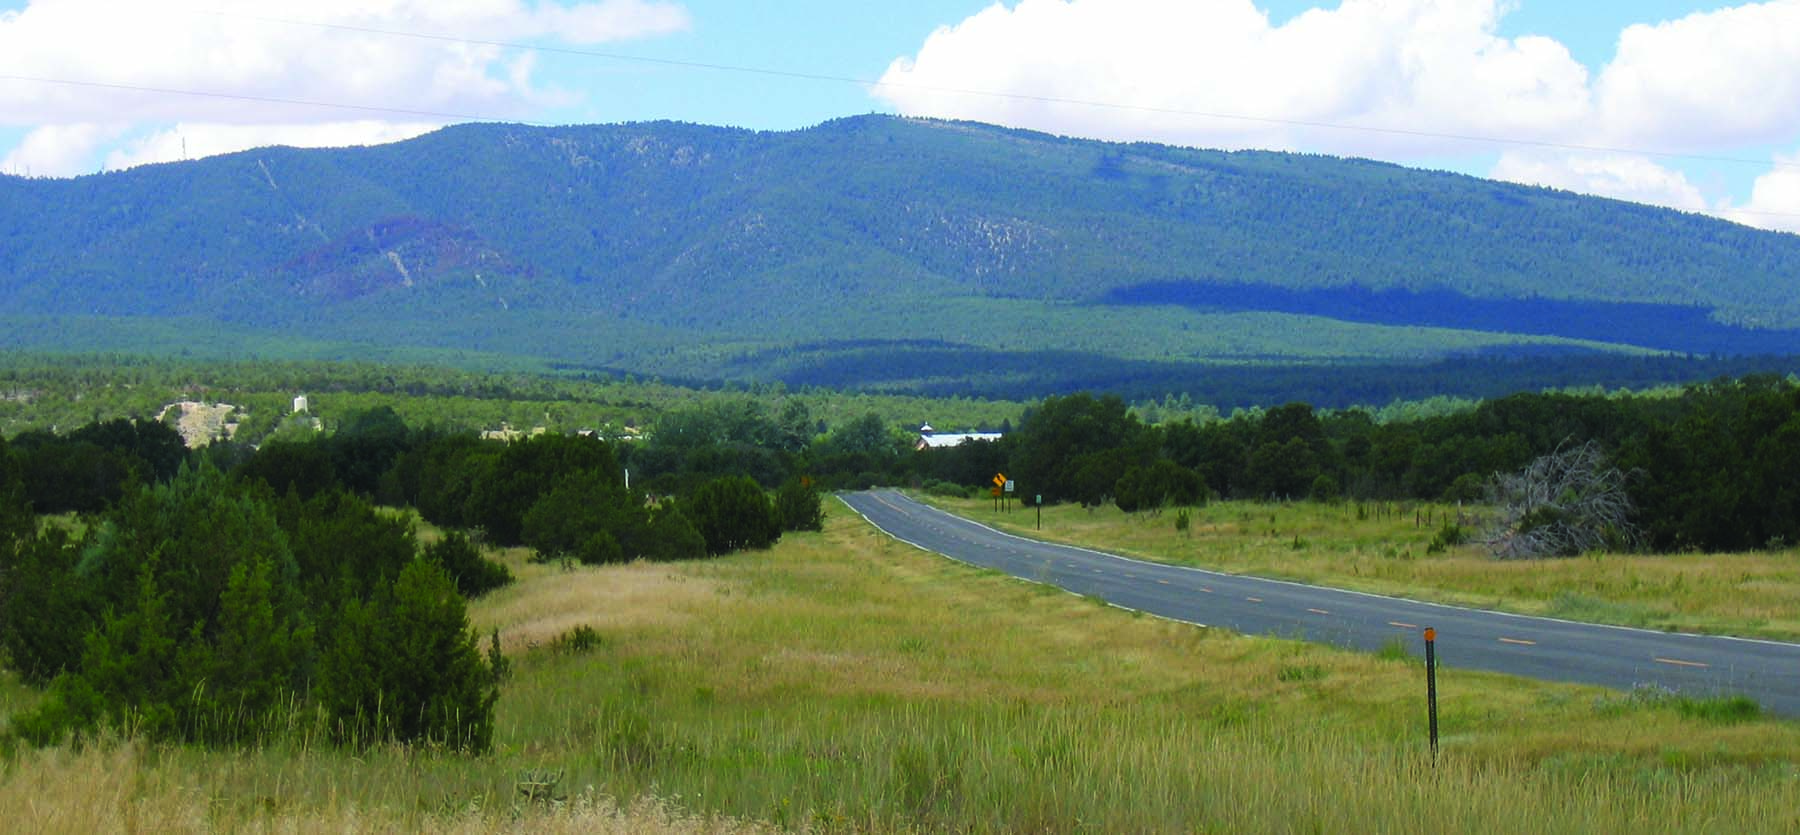 ニューメキシコ州の田舎道